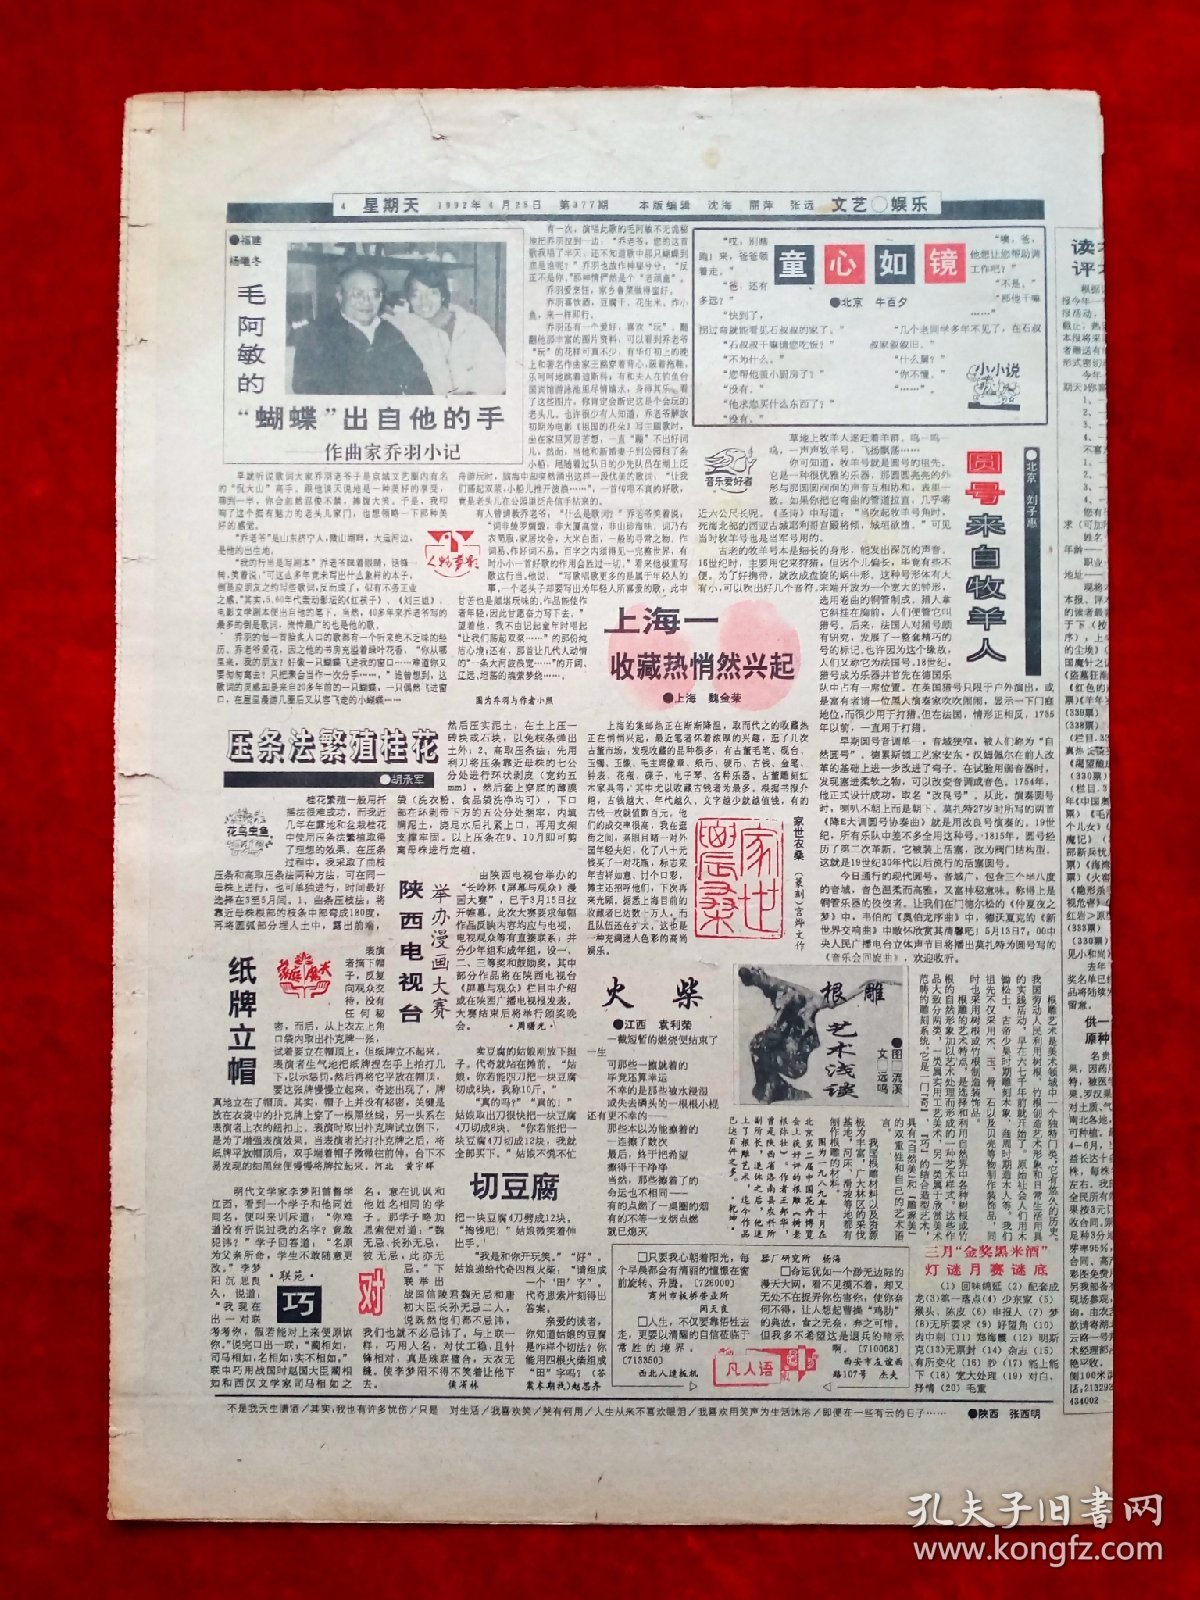 《星期天》1992—4—25，陈怡  毛阿敏  乔羽  赵四小姐